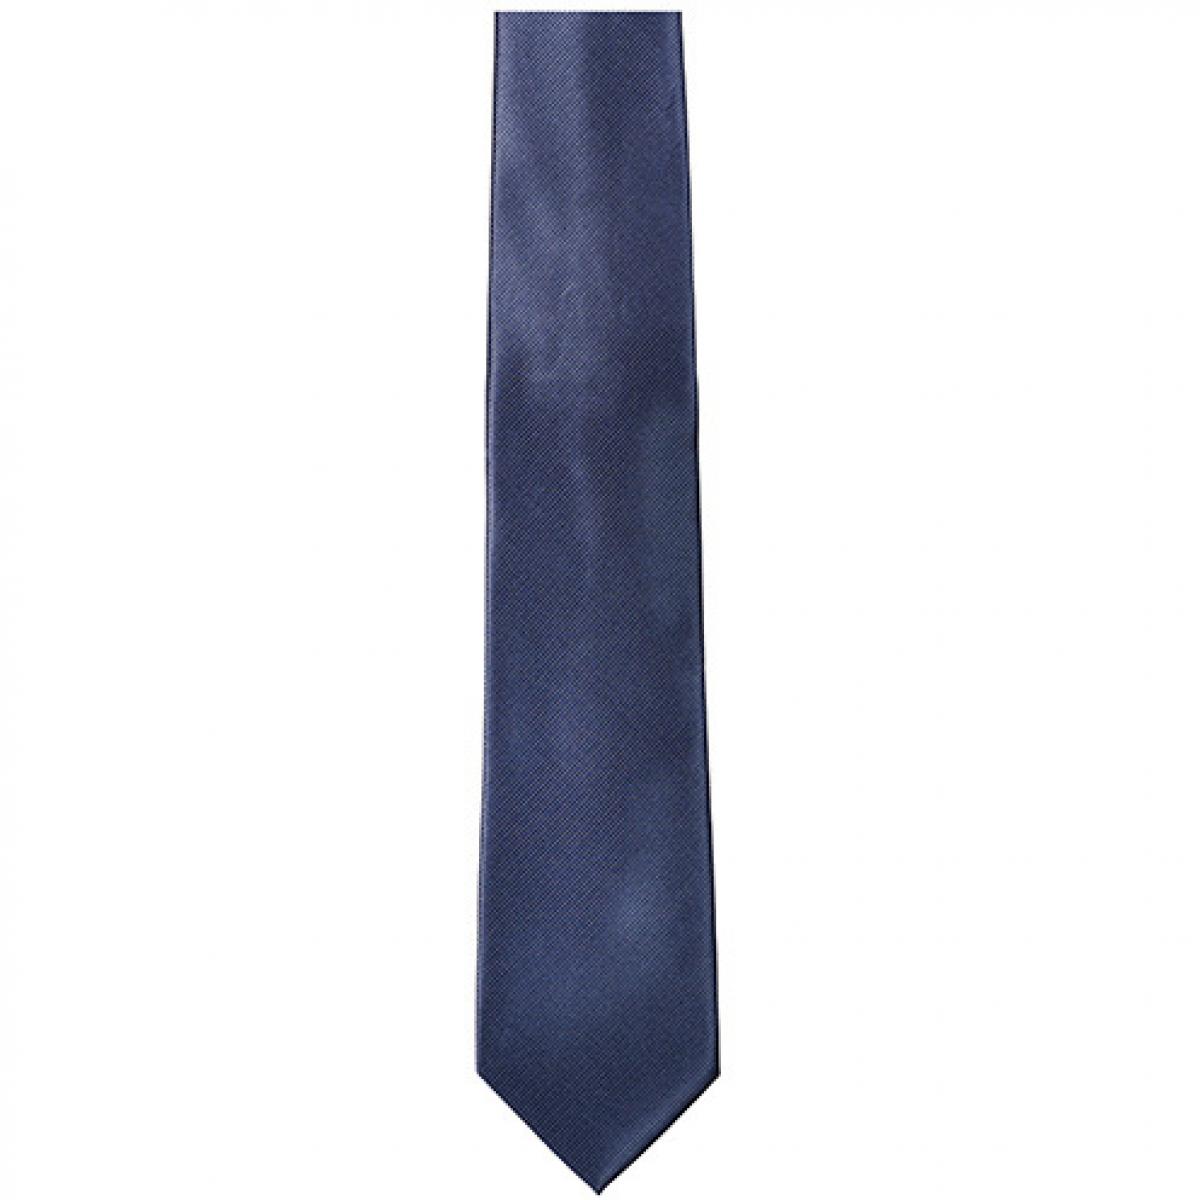 Hersteller: TYTO Herstellernummer: TT902 Artikelbezeichnung: Twill Tie / 144 x 8,5cm Farbe: Grey